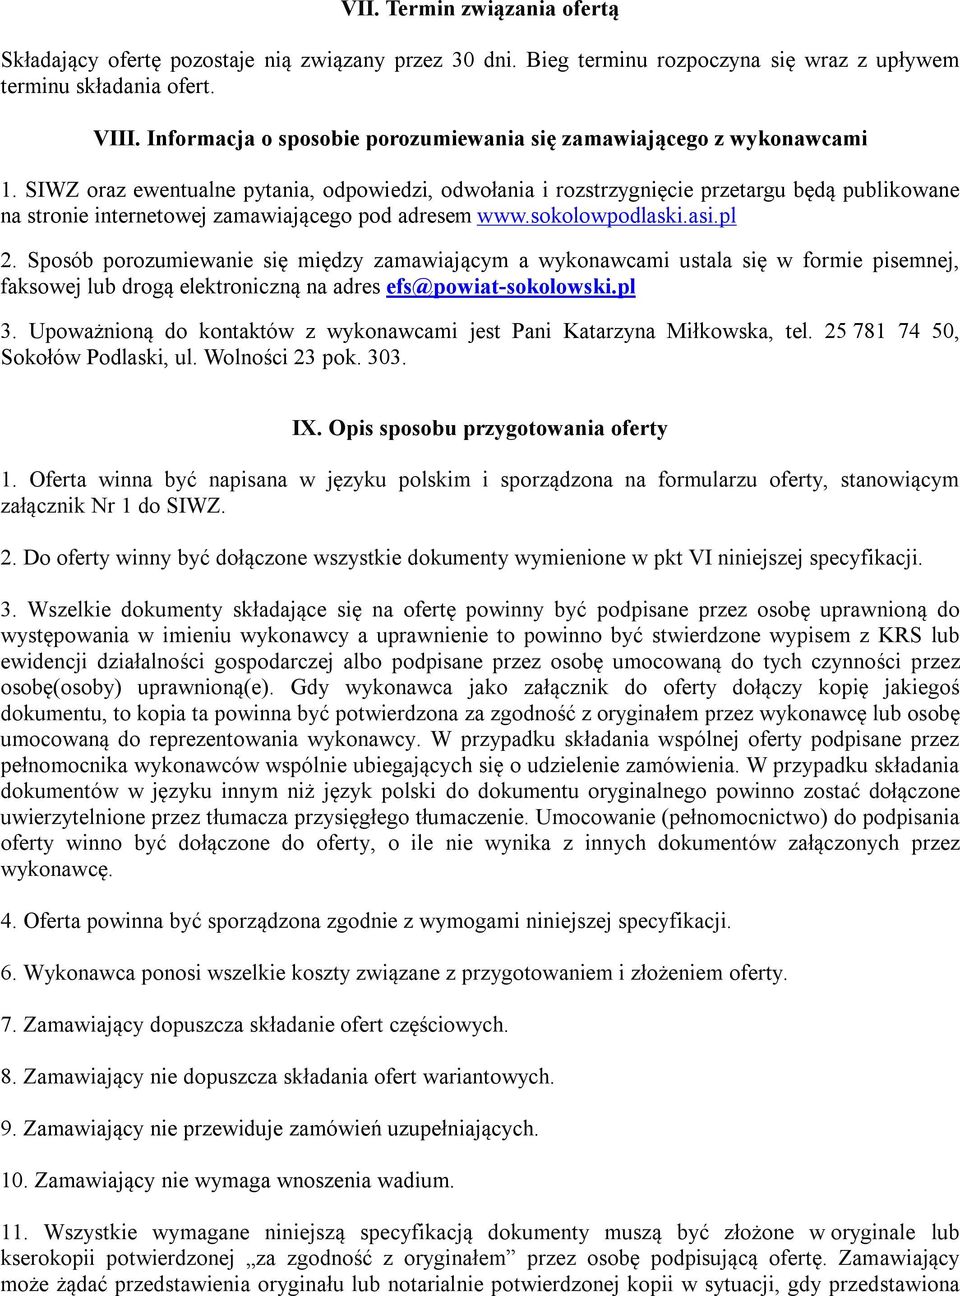 SIWZ oraz ewentualne pytania, odpowiedzi, odwołania i rozstrzygnięcie przetargu będą publikowane na stronie internetowej zamawiającego pod adresem www.sokolowpodlaski.asi.pl 2.